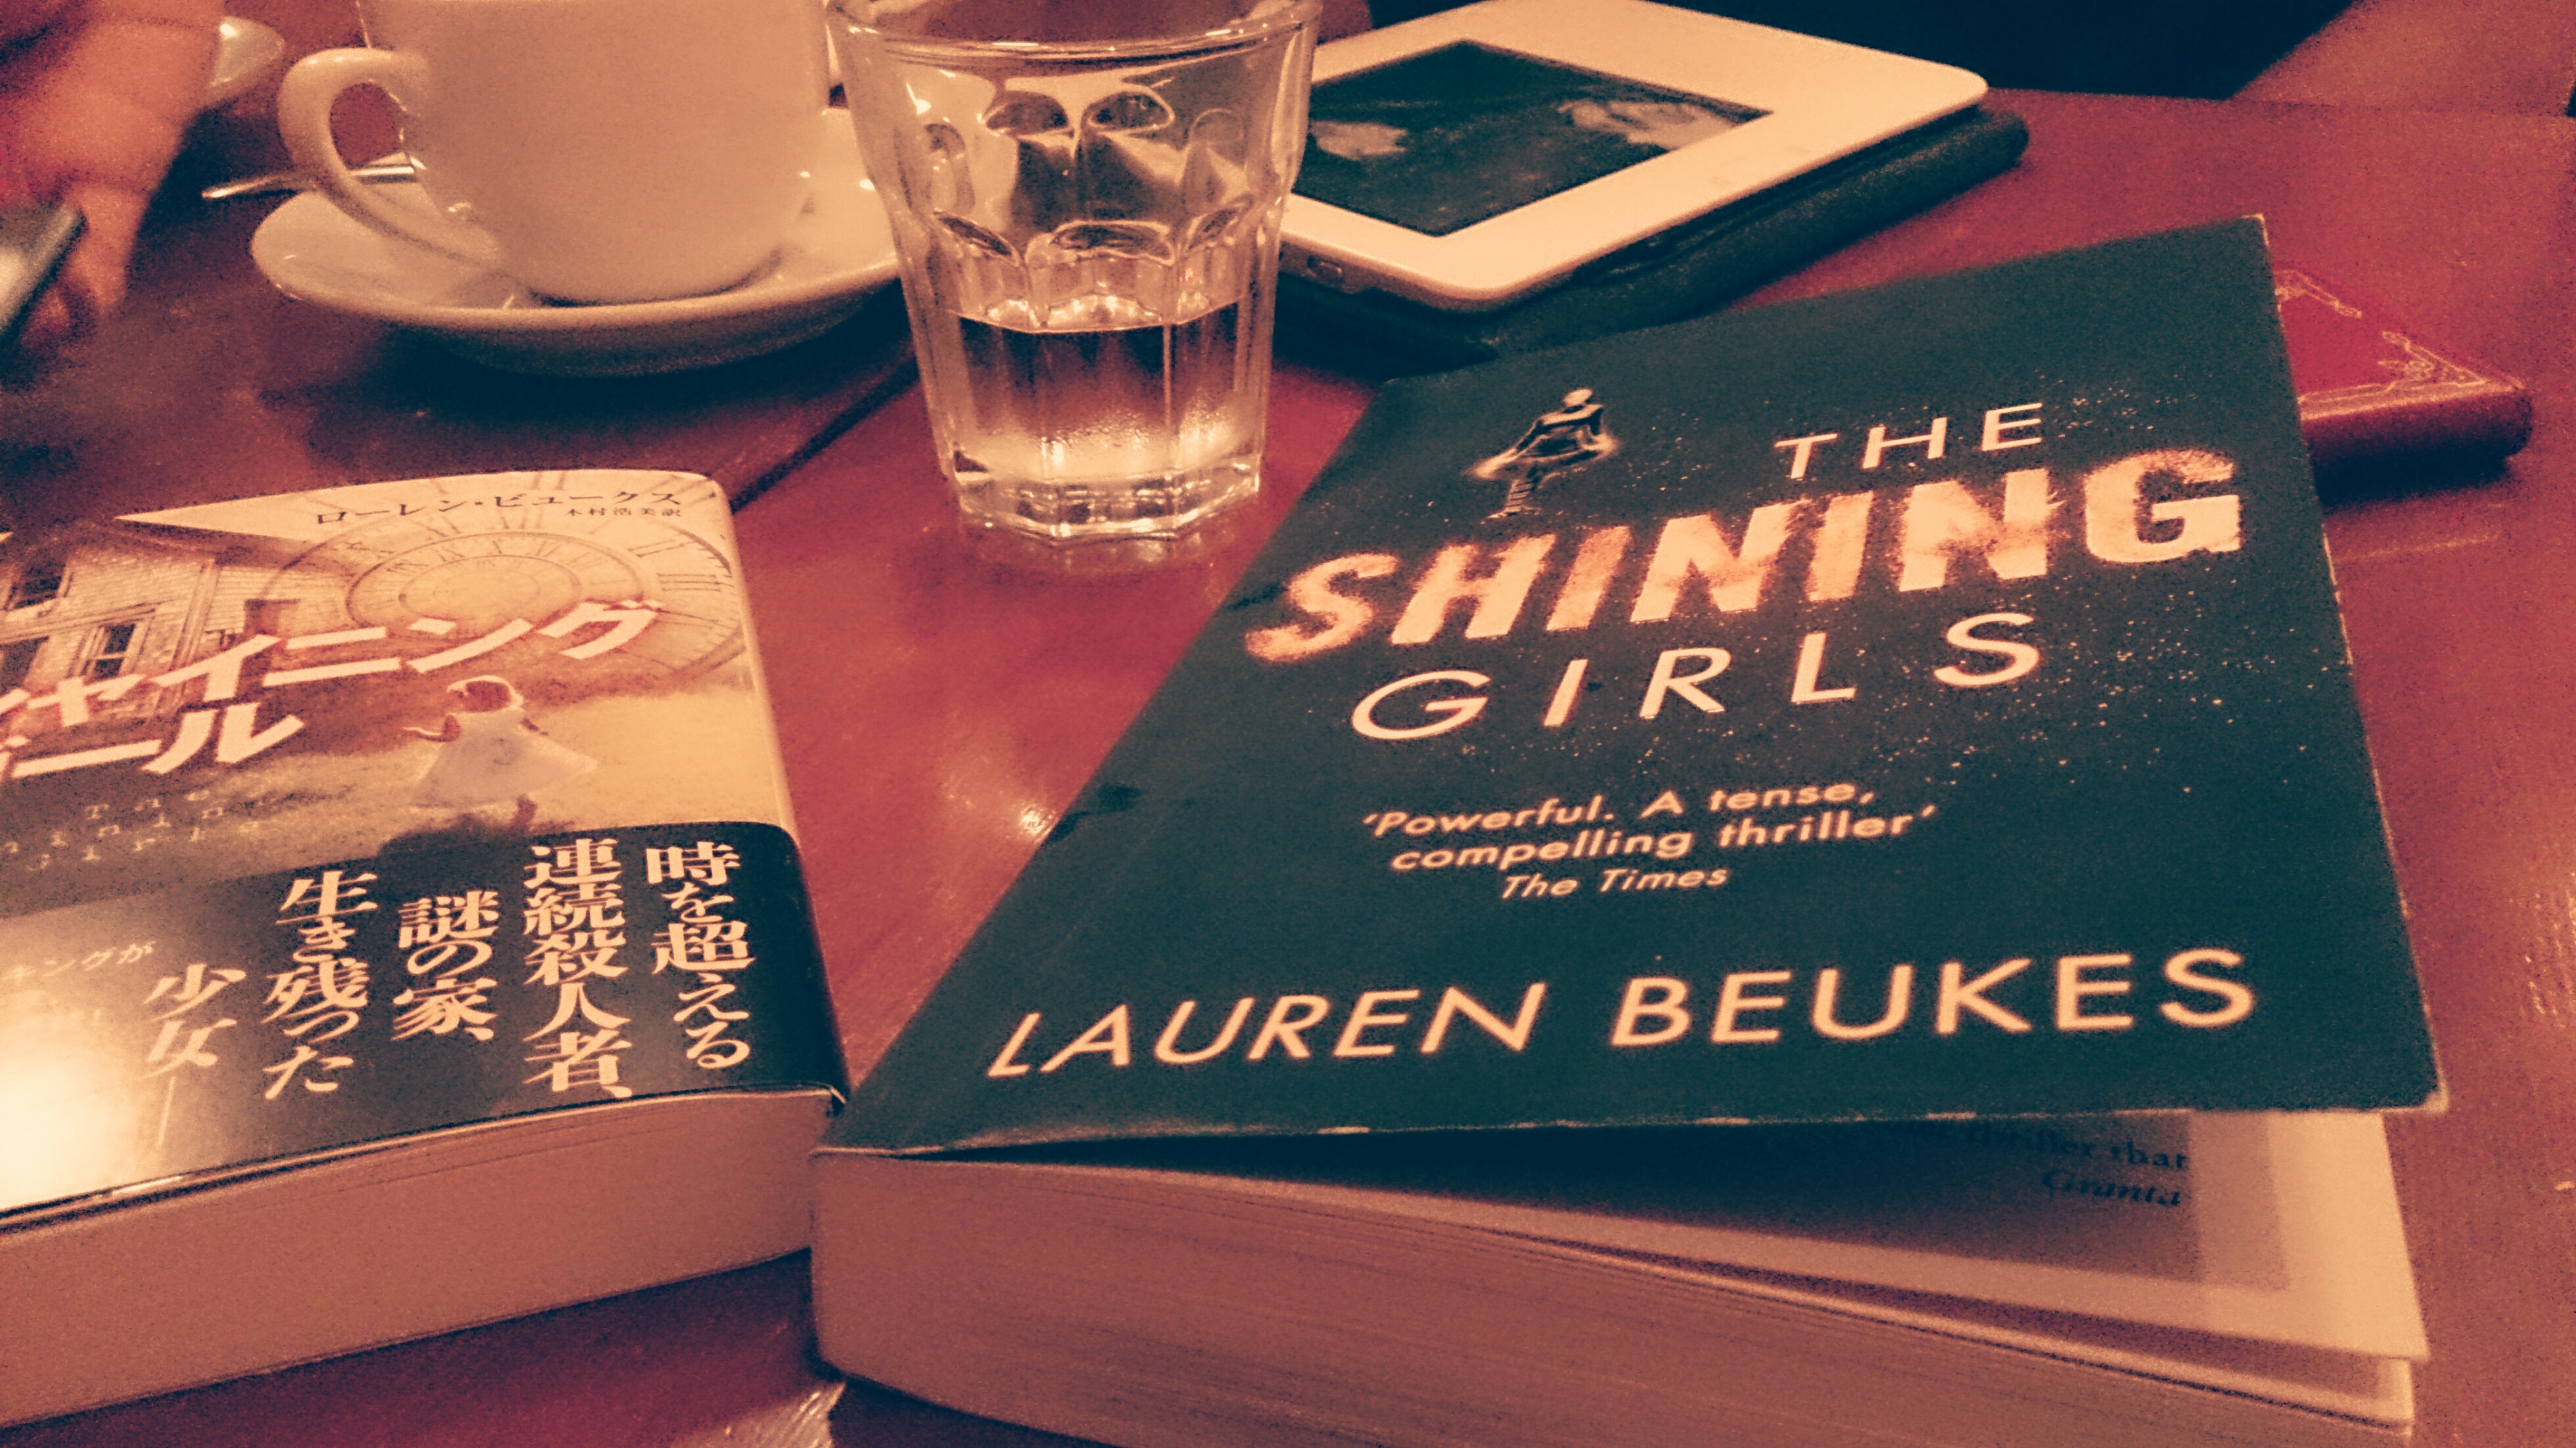 HAJET Book Club 7: A Shining Day for The Shining Girls